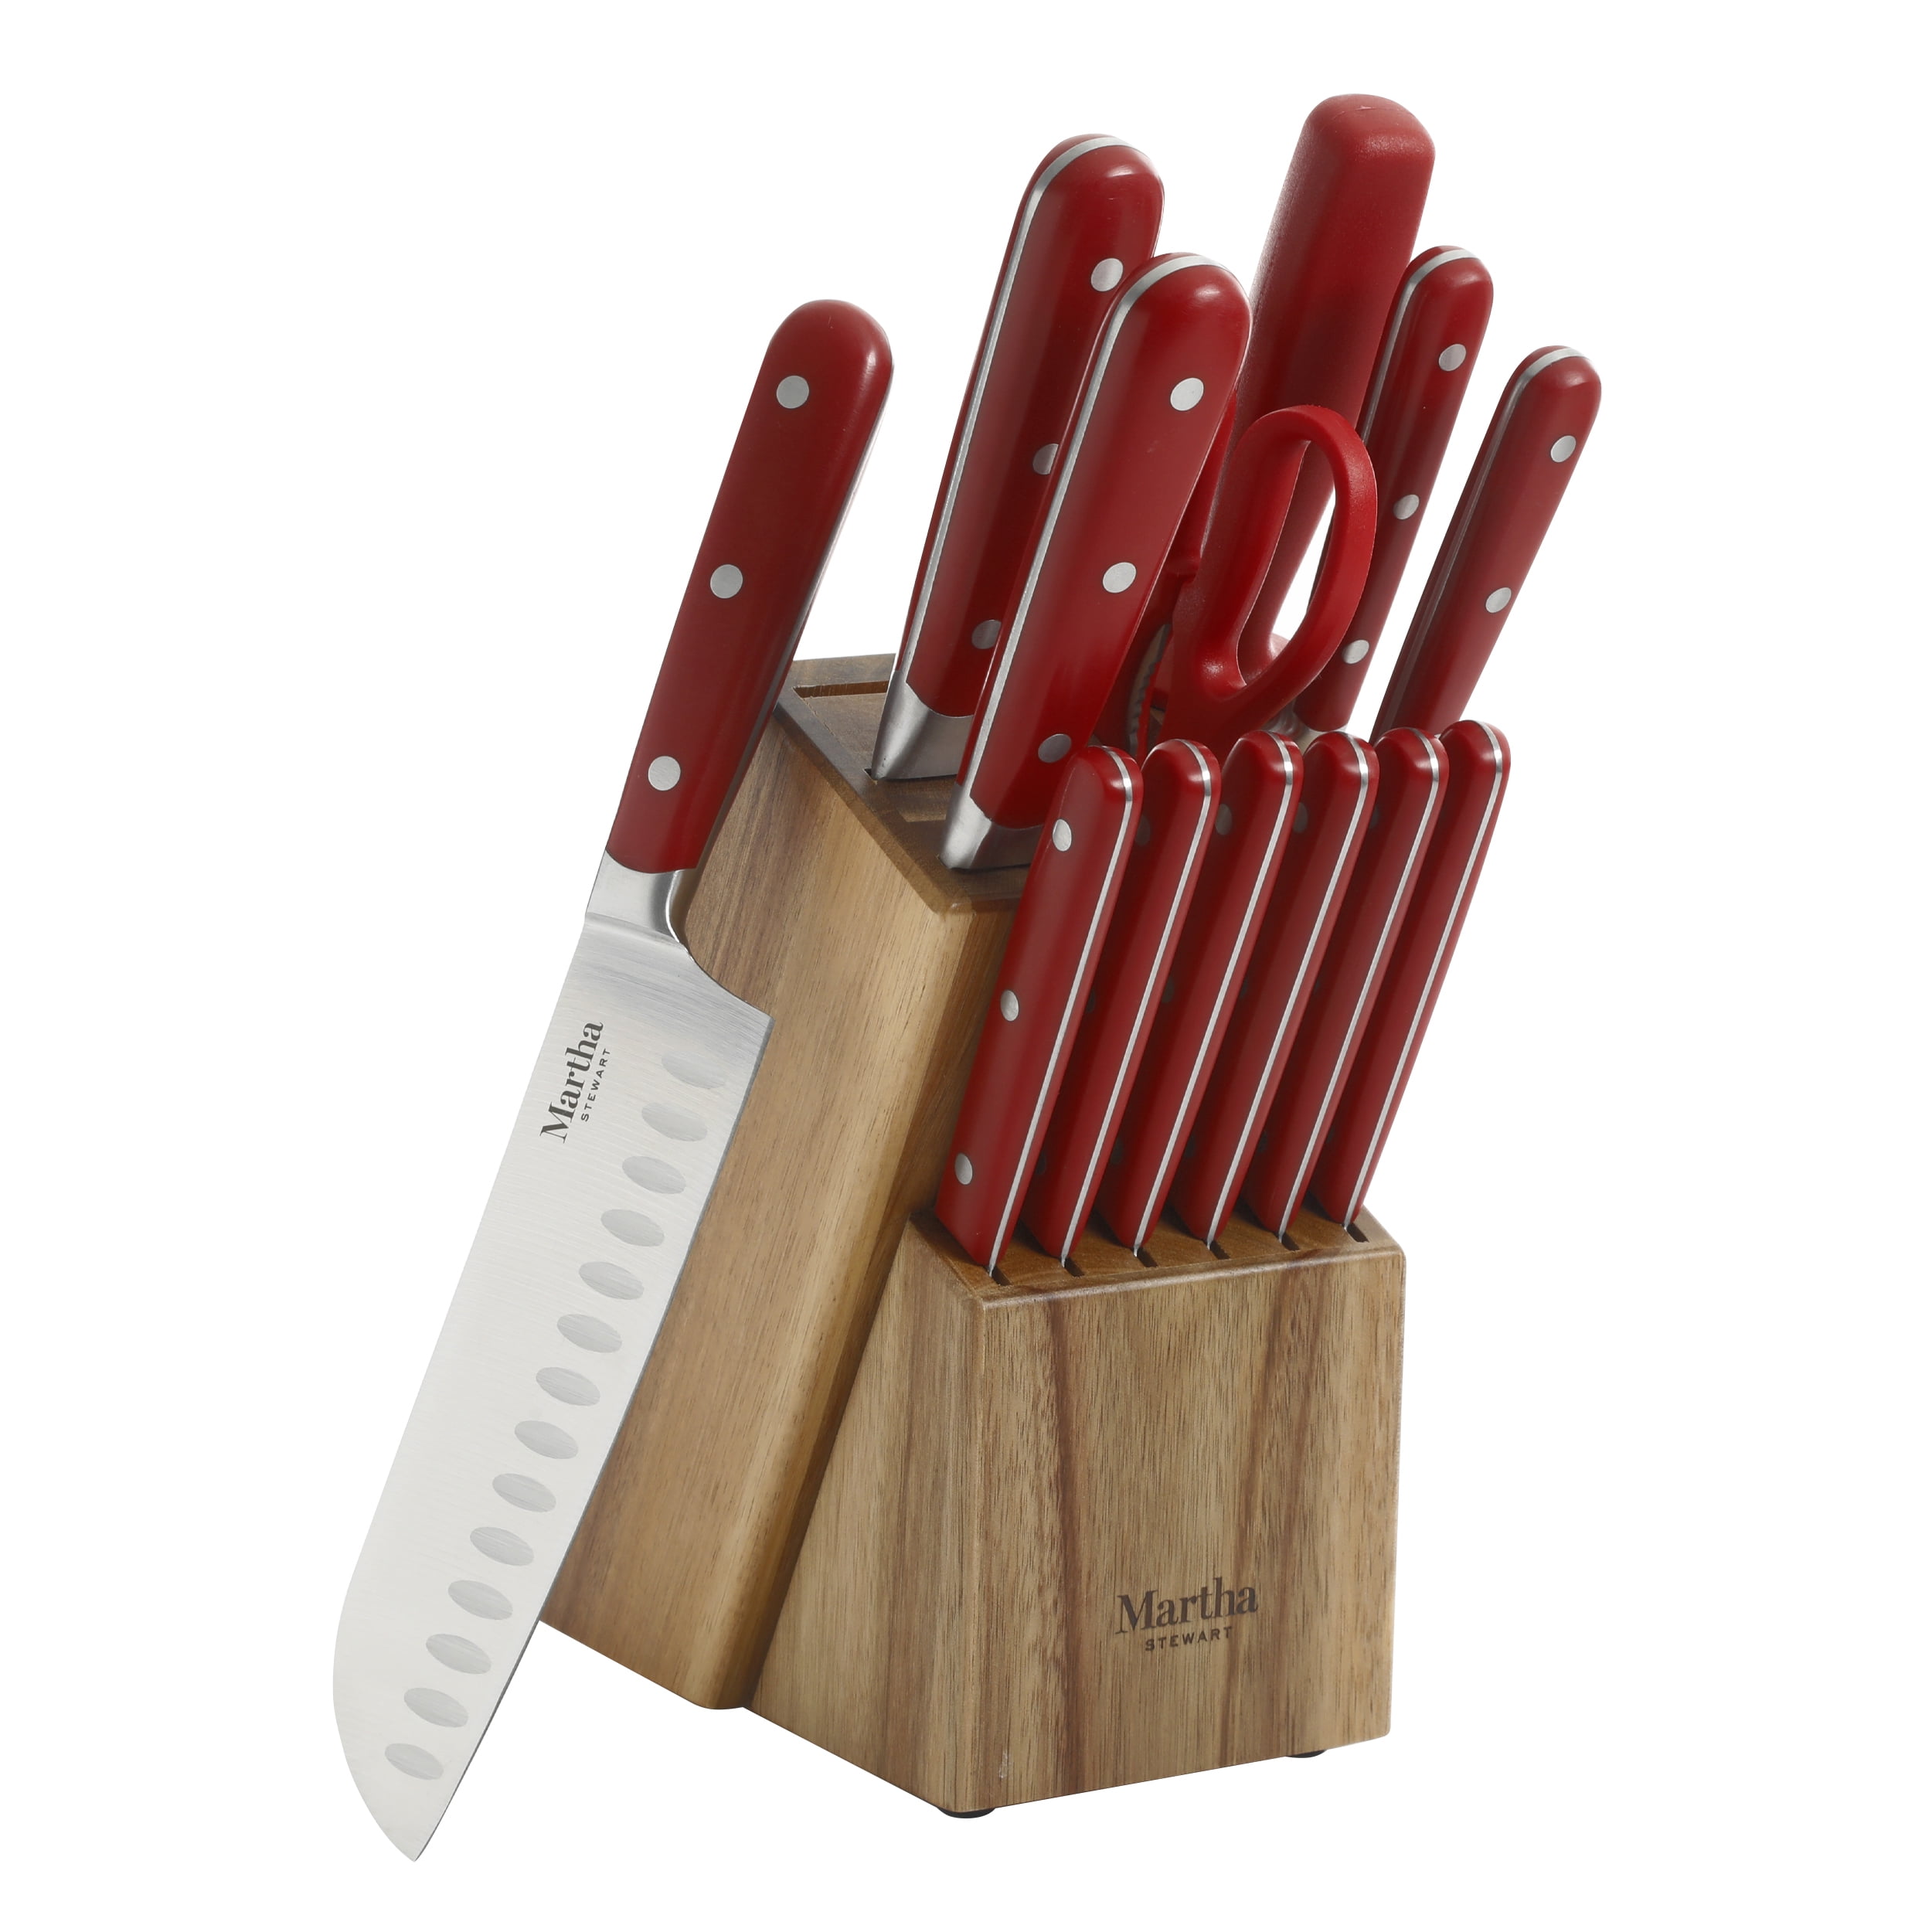 Martha Stewart Everyday Eastwalk 14-Piece Red Stainless Steel Cutlery Set 